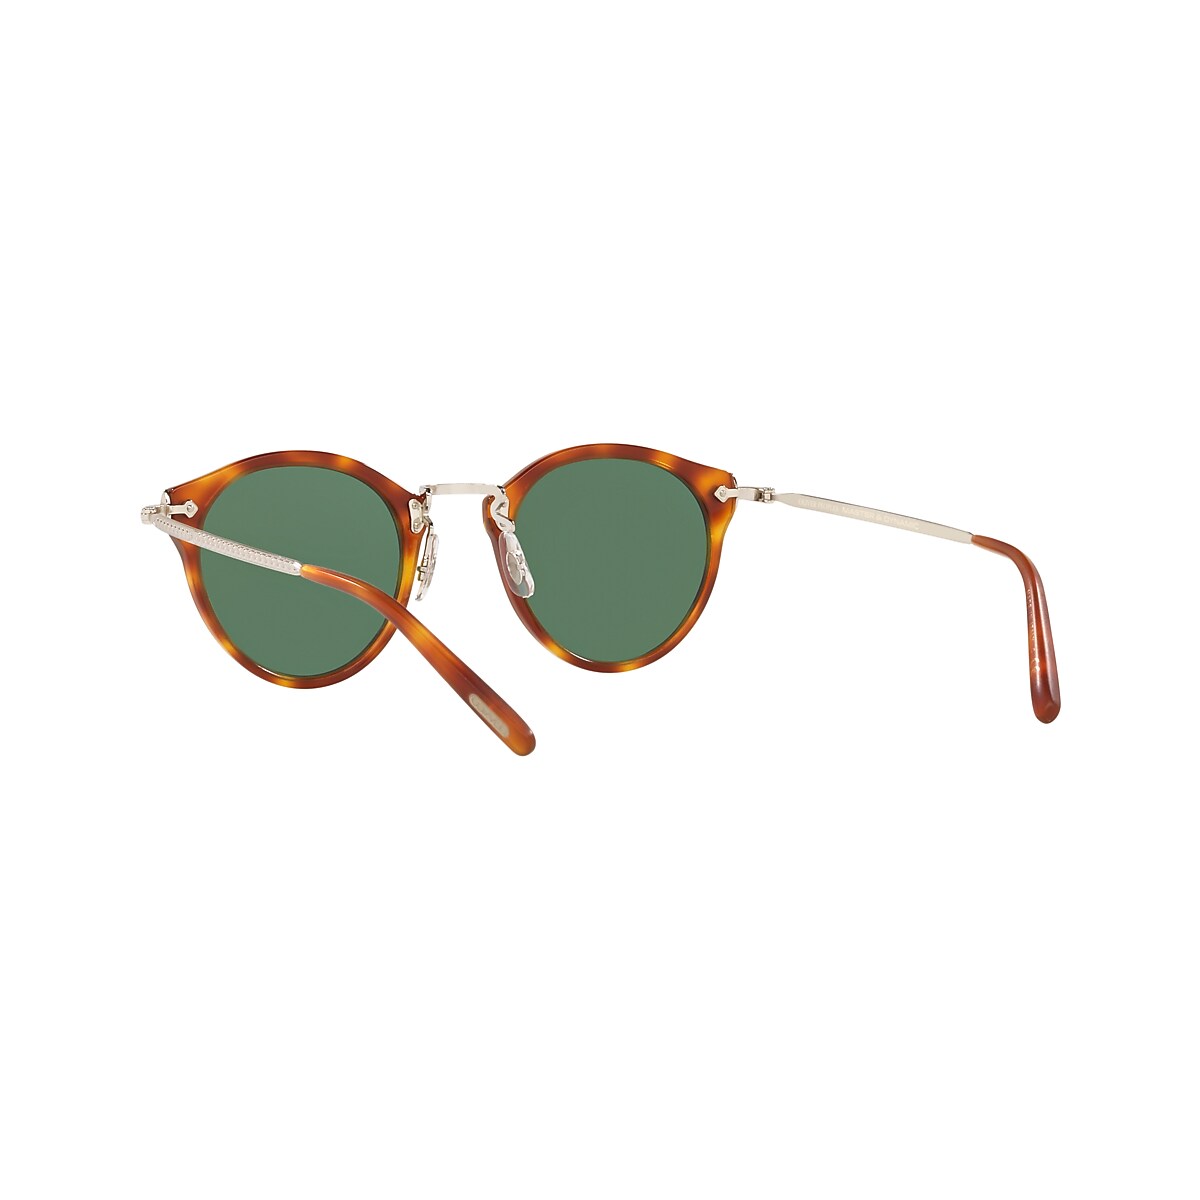 Oliver OP-505 Sun Sunglasses in Lbr | Oliver®